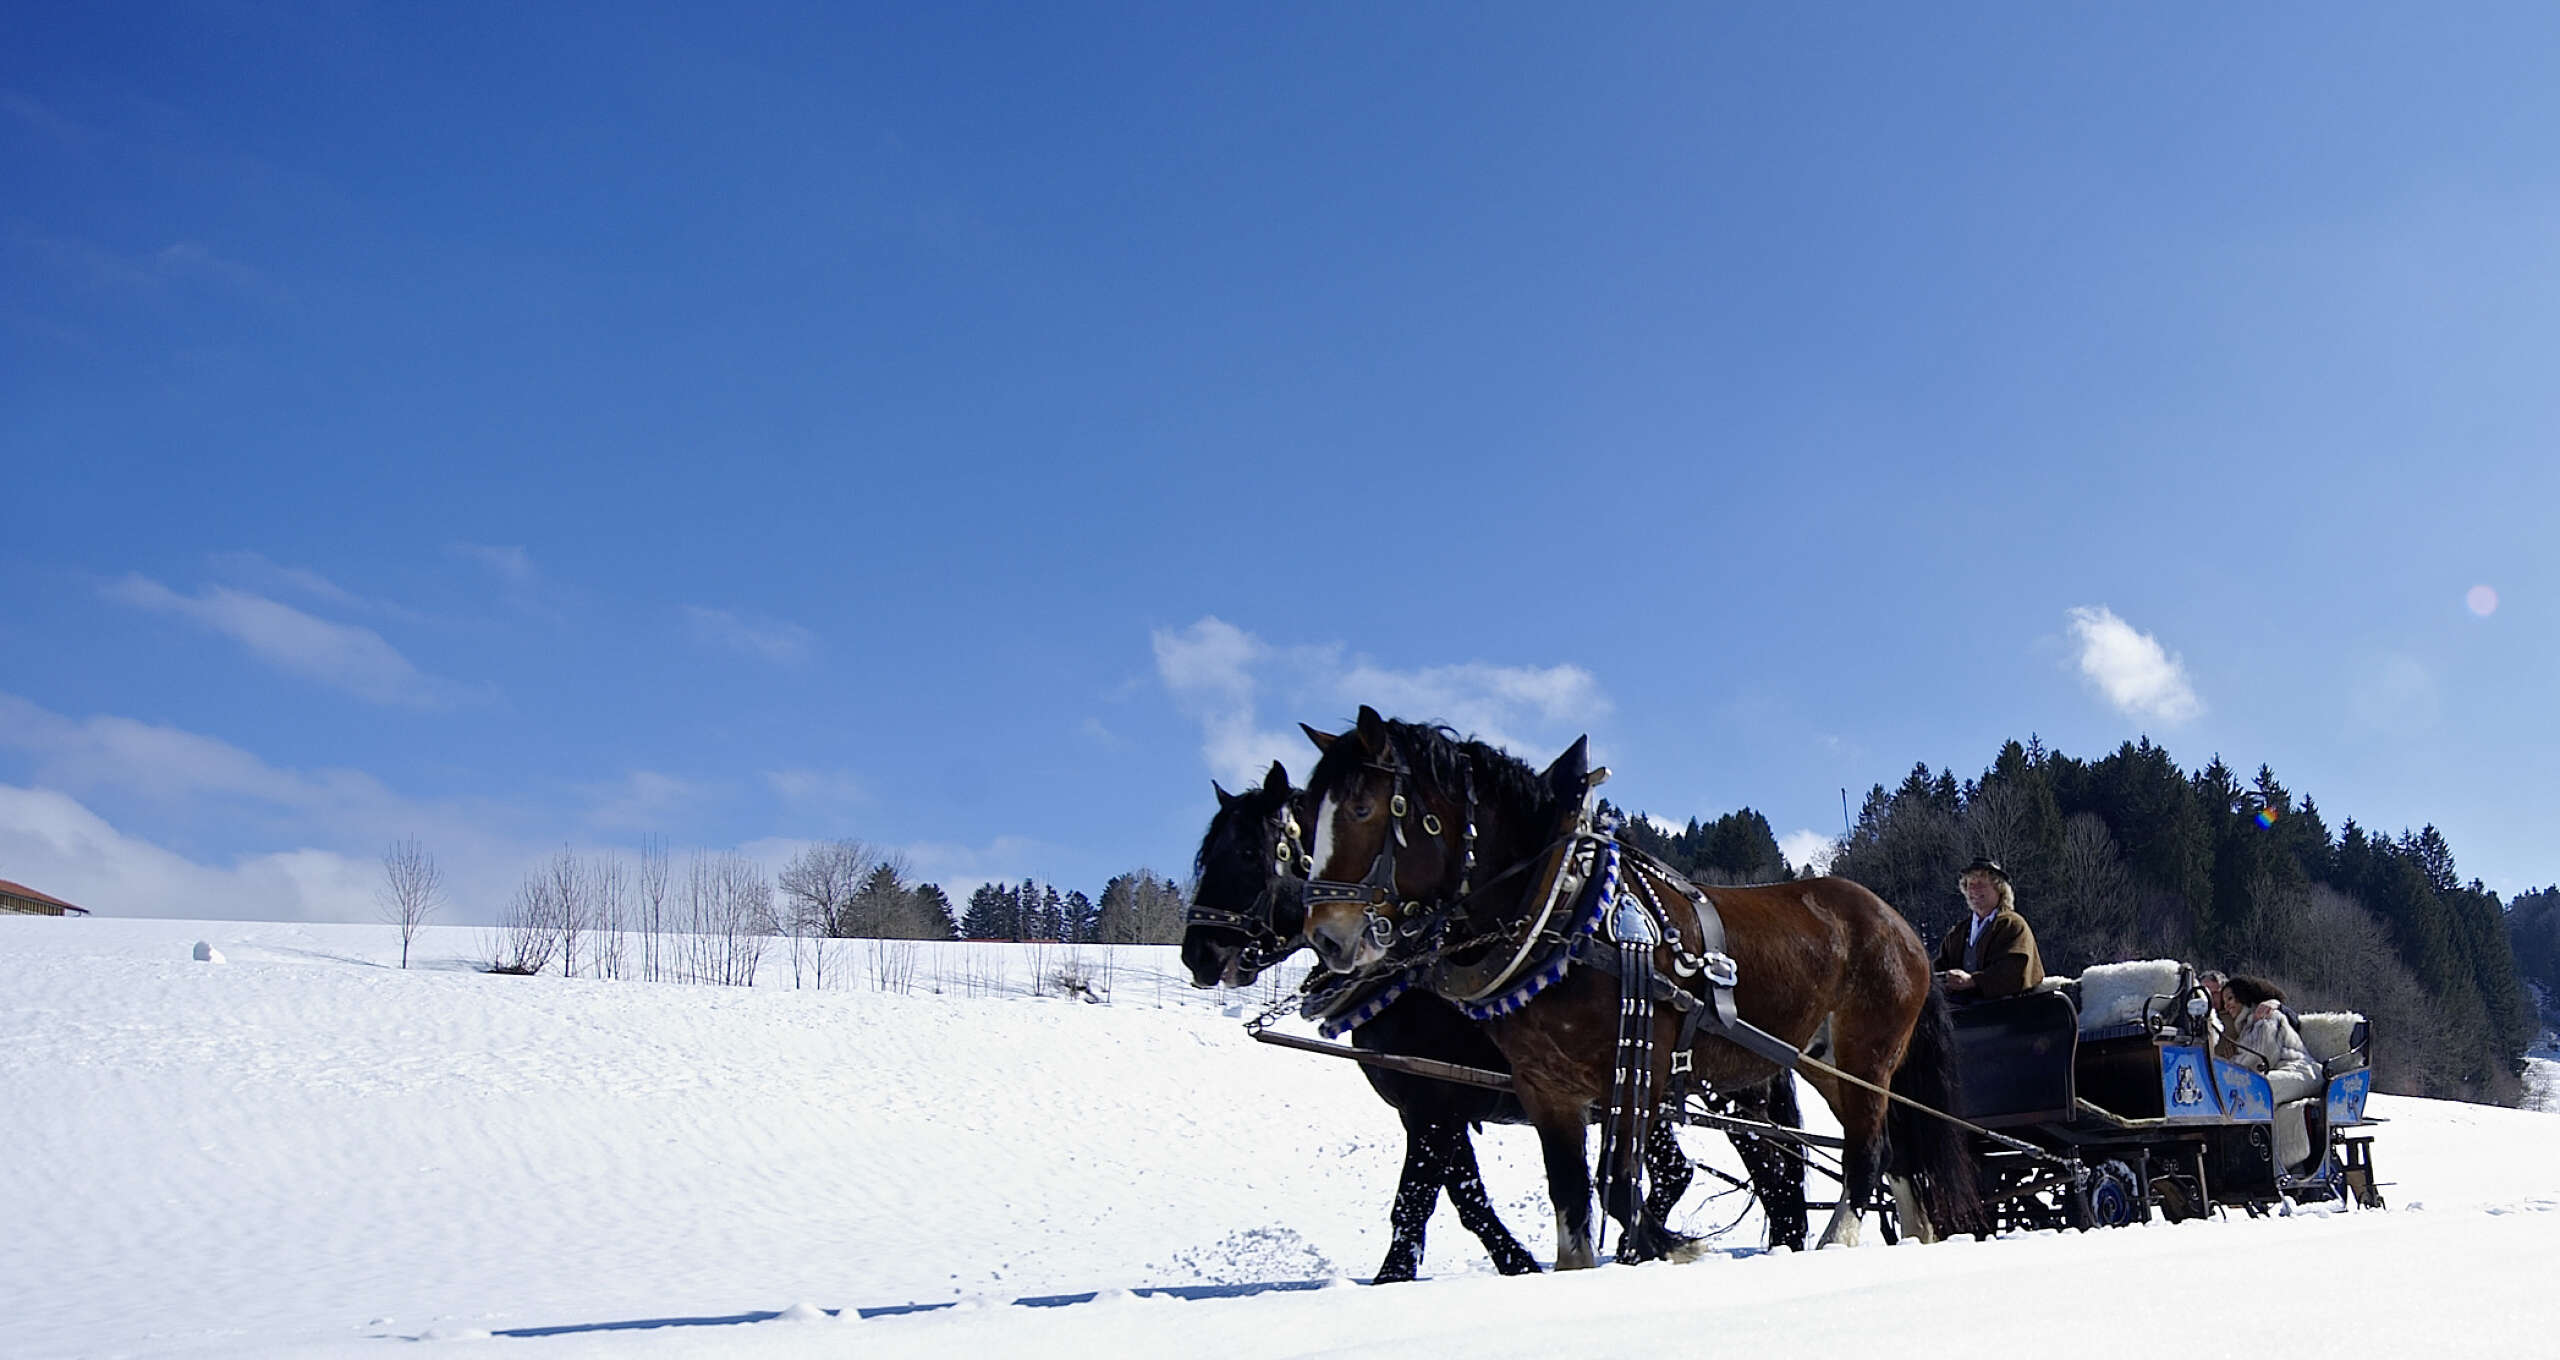 Zwei Pferde ziehen einen Schlitten mit drei Insassen durch eine verschneite Landschaft an einem sonnigen Tag.